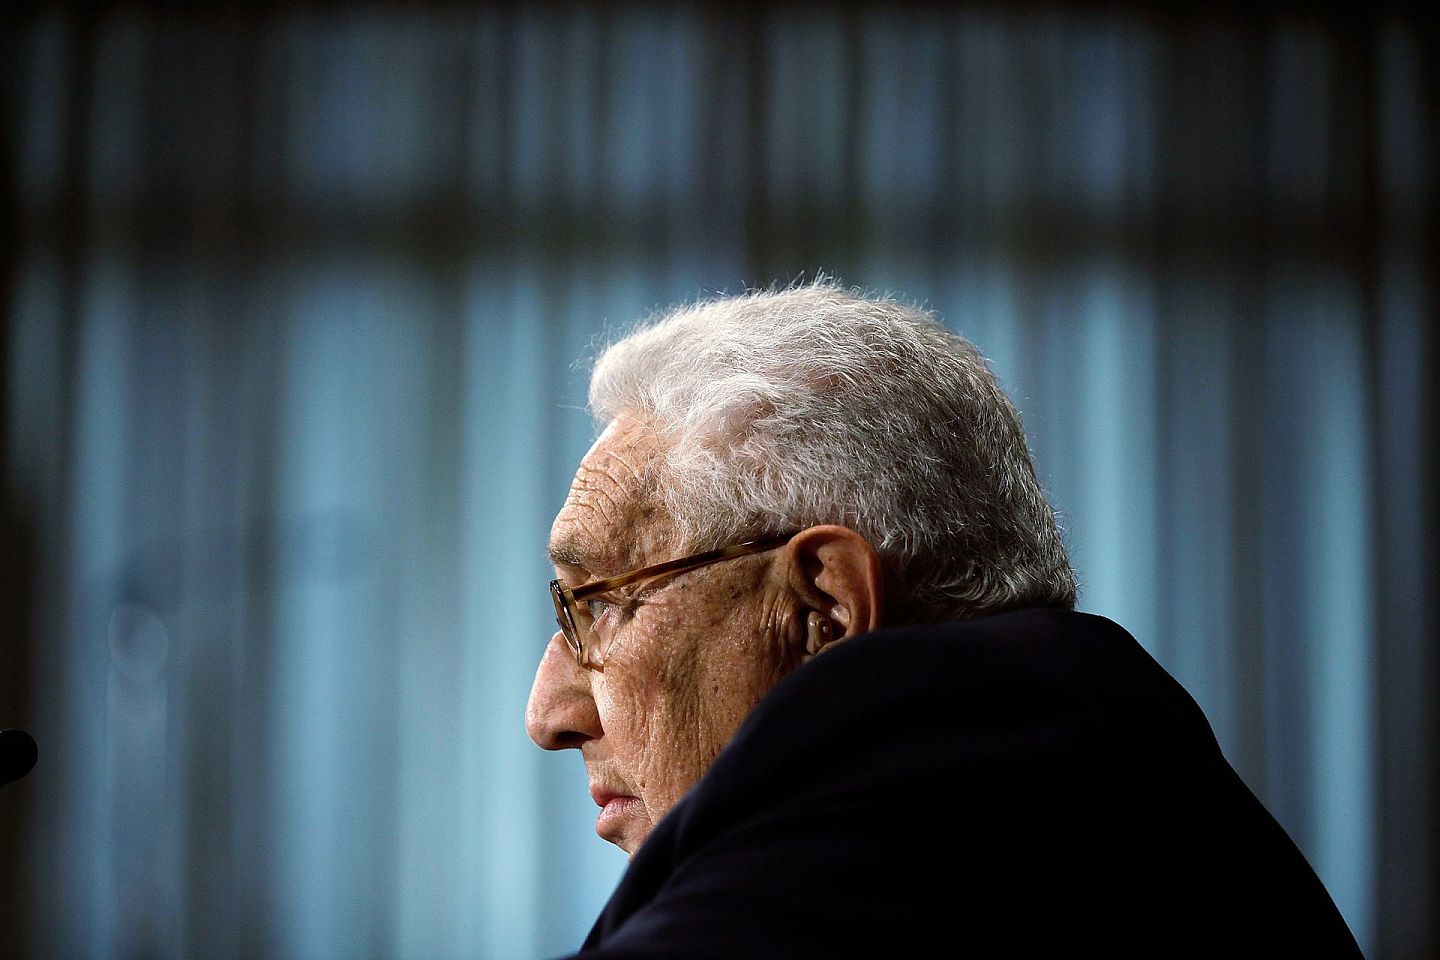 亨利·阿尔弗雷德·基辛格（Henry Alfred Kissinger），原美国国家安全顾问，后担任尼克松政府的国务卿。作为一位现实政治的支持者，基辛格在1969年到1977年之间在美国外交政策中发挥了中心作用。他倡导缓和政策，使美苏之间紧张的关系得到缓解，并促成了中国的开放和新的战略性的反苏中美联盟的形成。（VCG）